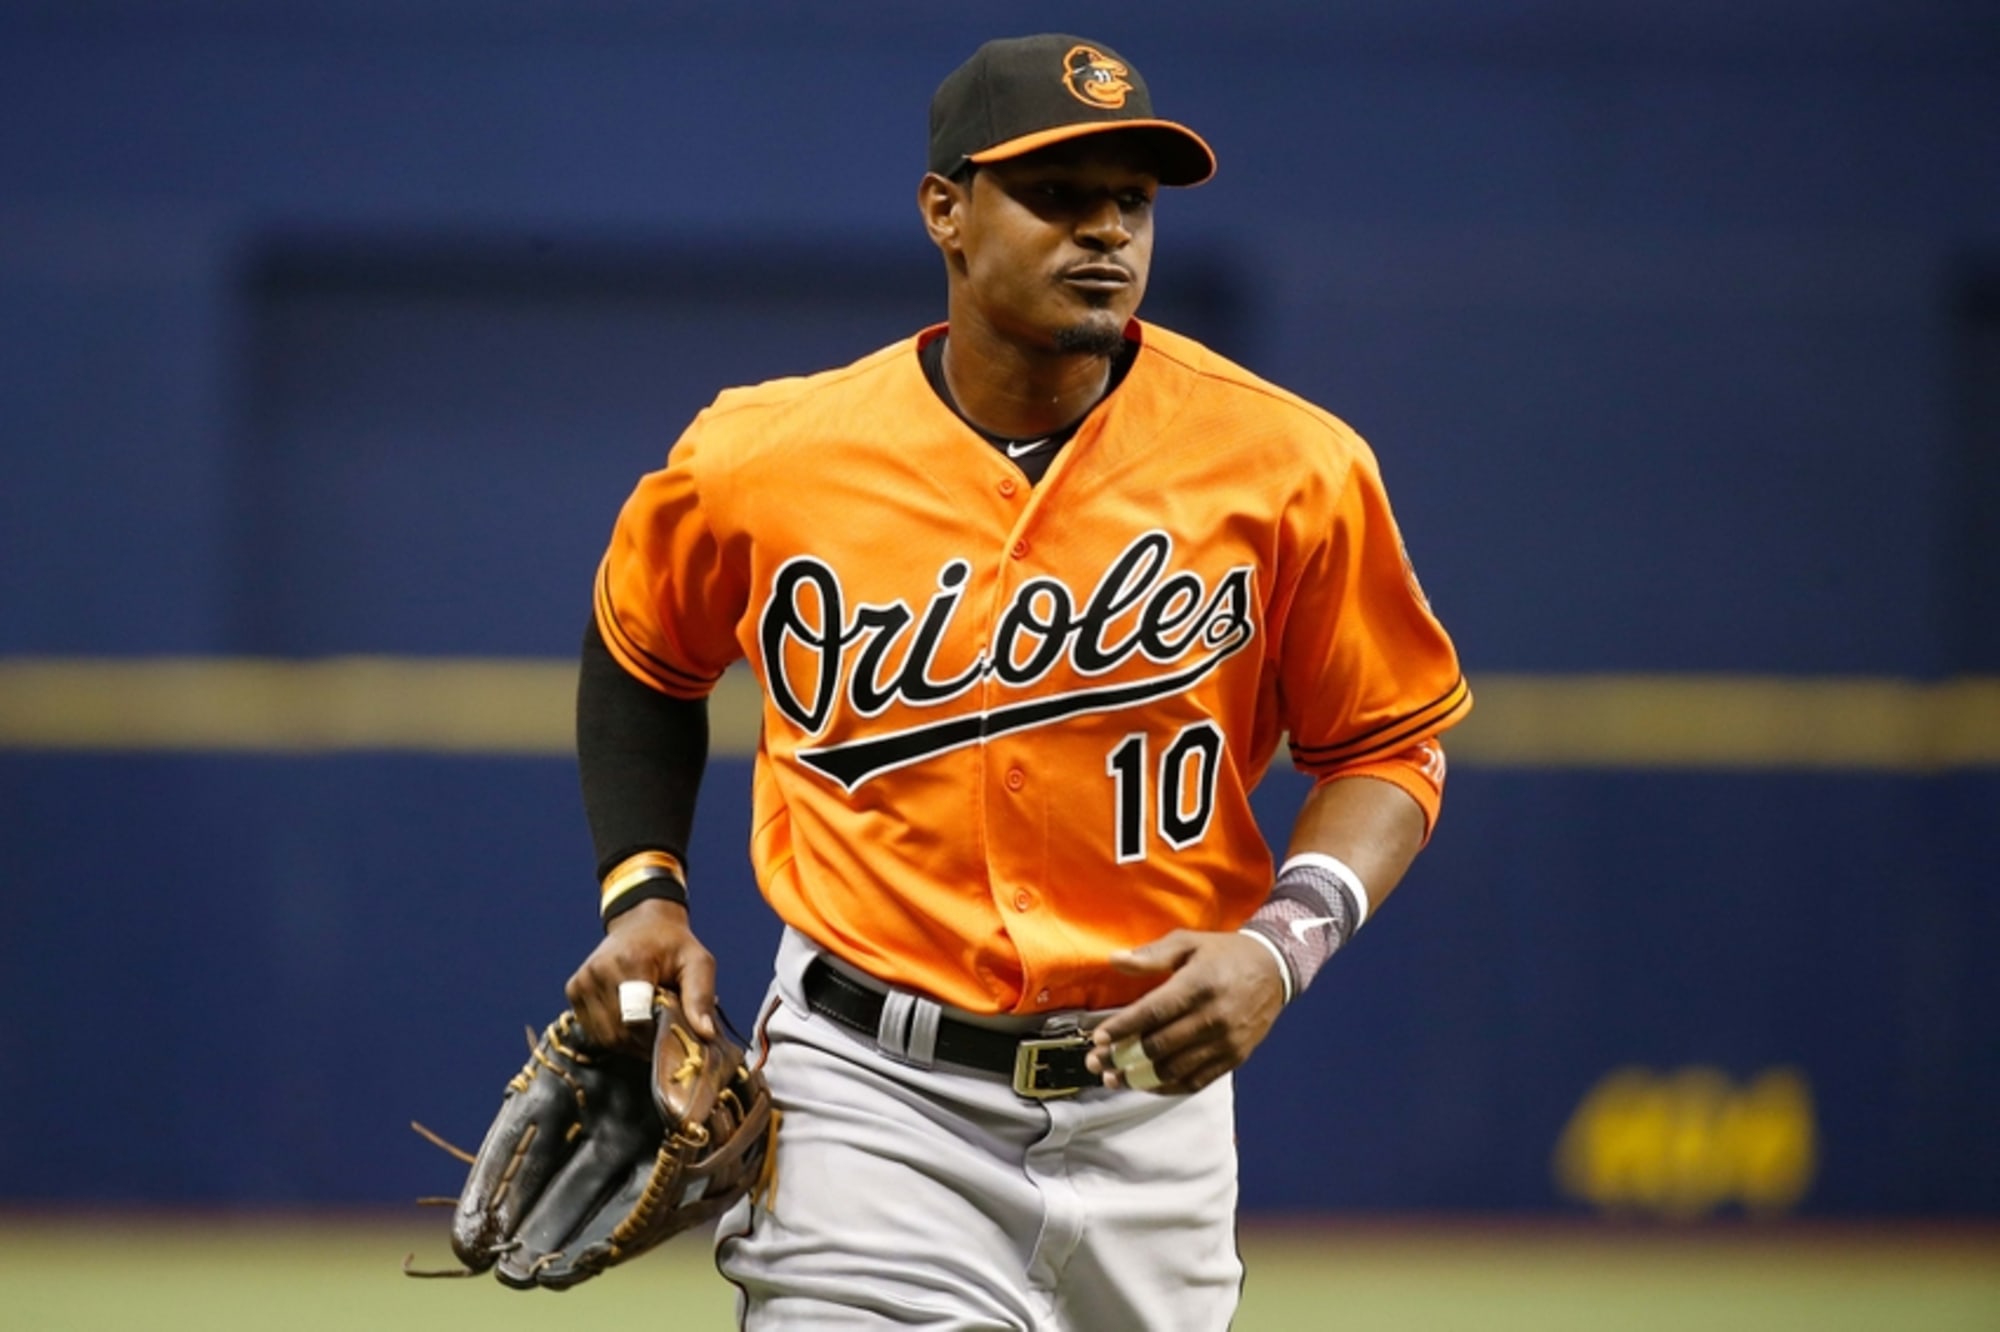 Baltimore Orioles: Adam Jones Among Strong Center Fielders in AL East